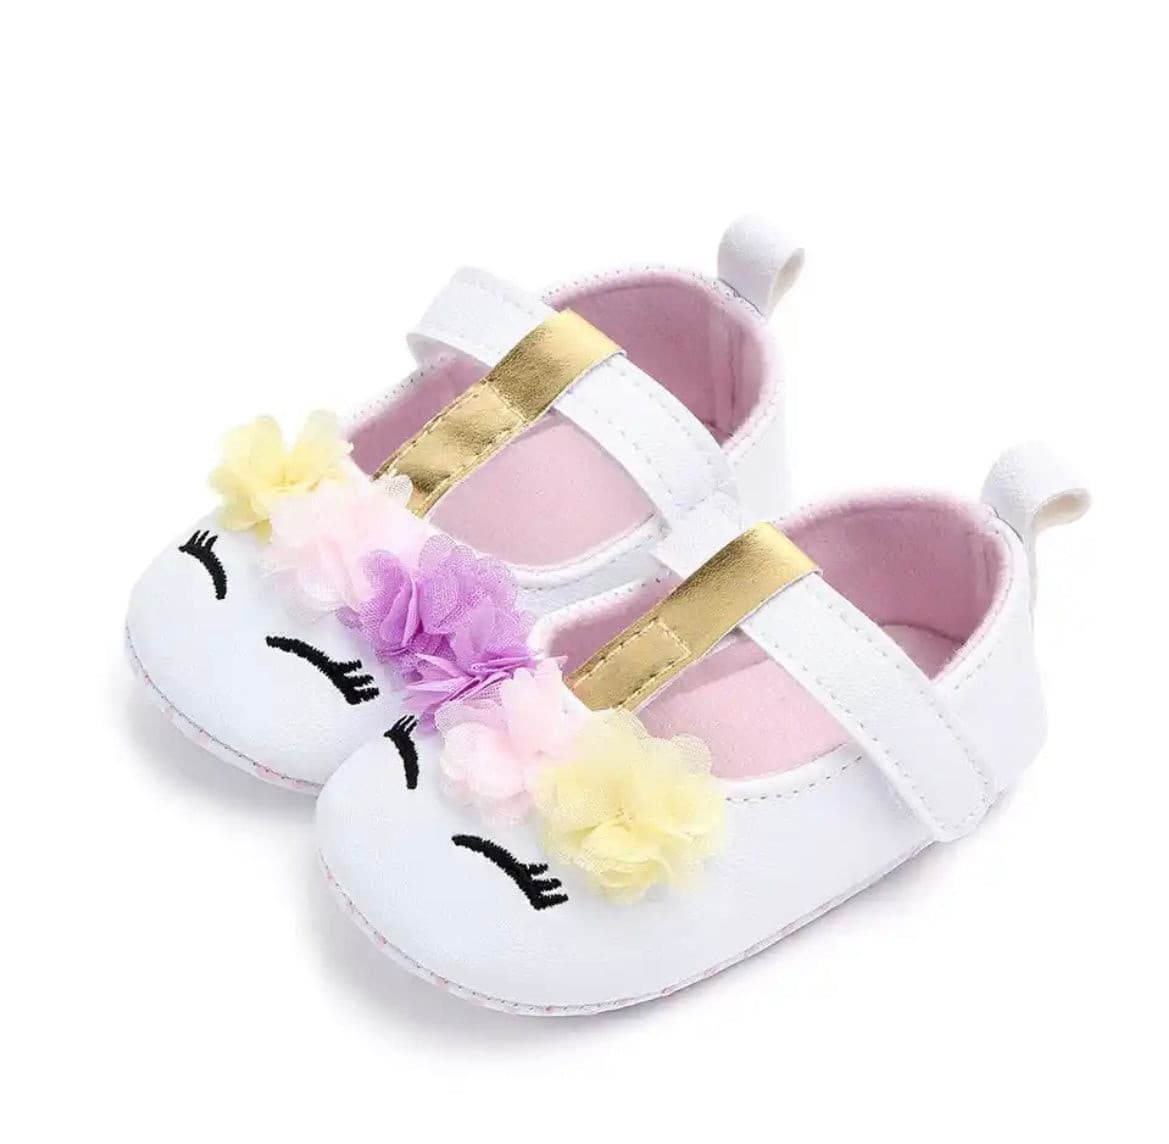 Unicorn Baby Shoes.